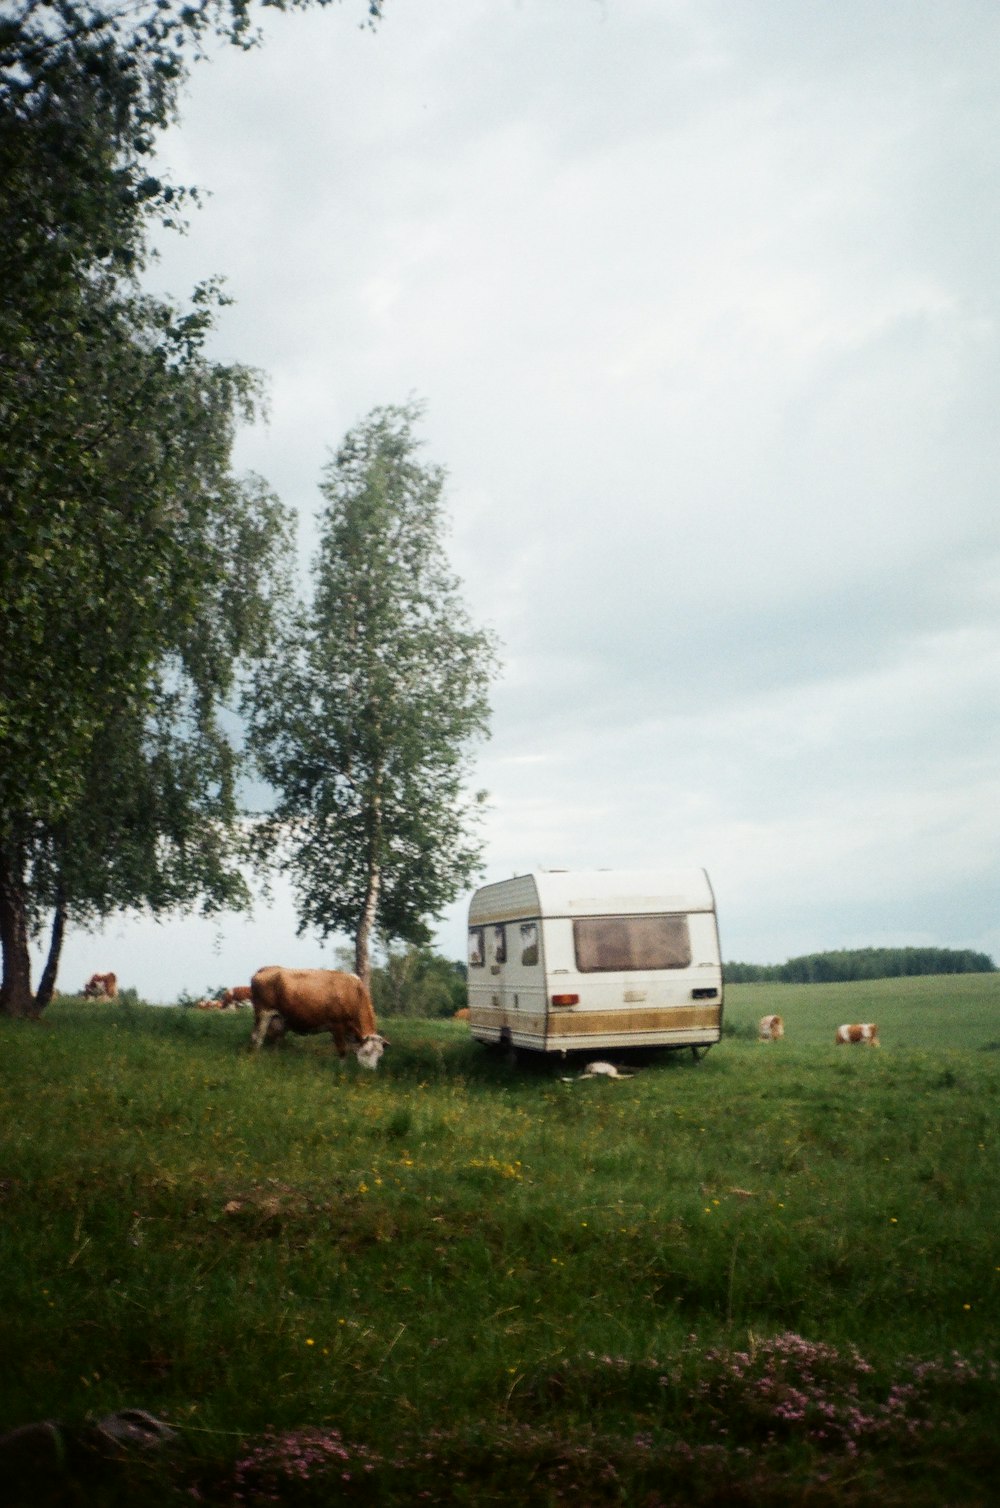 weiße und braune Kuh auf grünem Grasfeld tagsüber